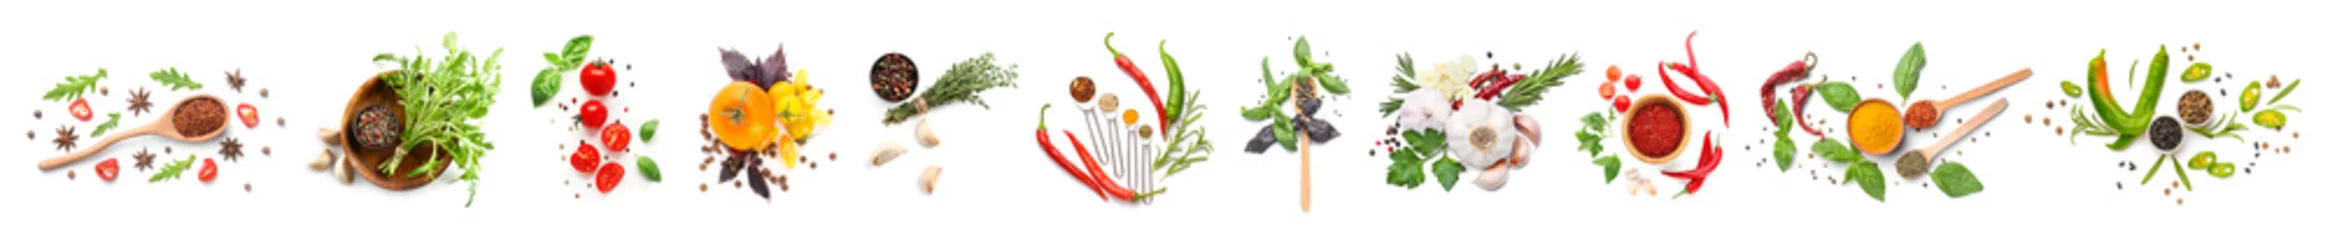 Photo sur Plexiglas Légumes frais Différentes épices, herbes et légumes frais sur fond blanc